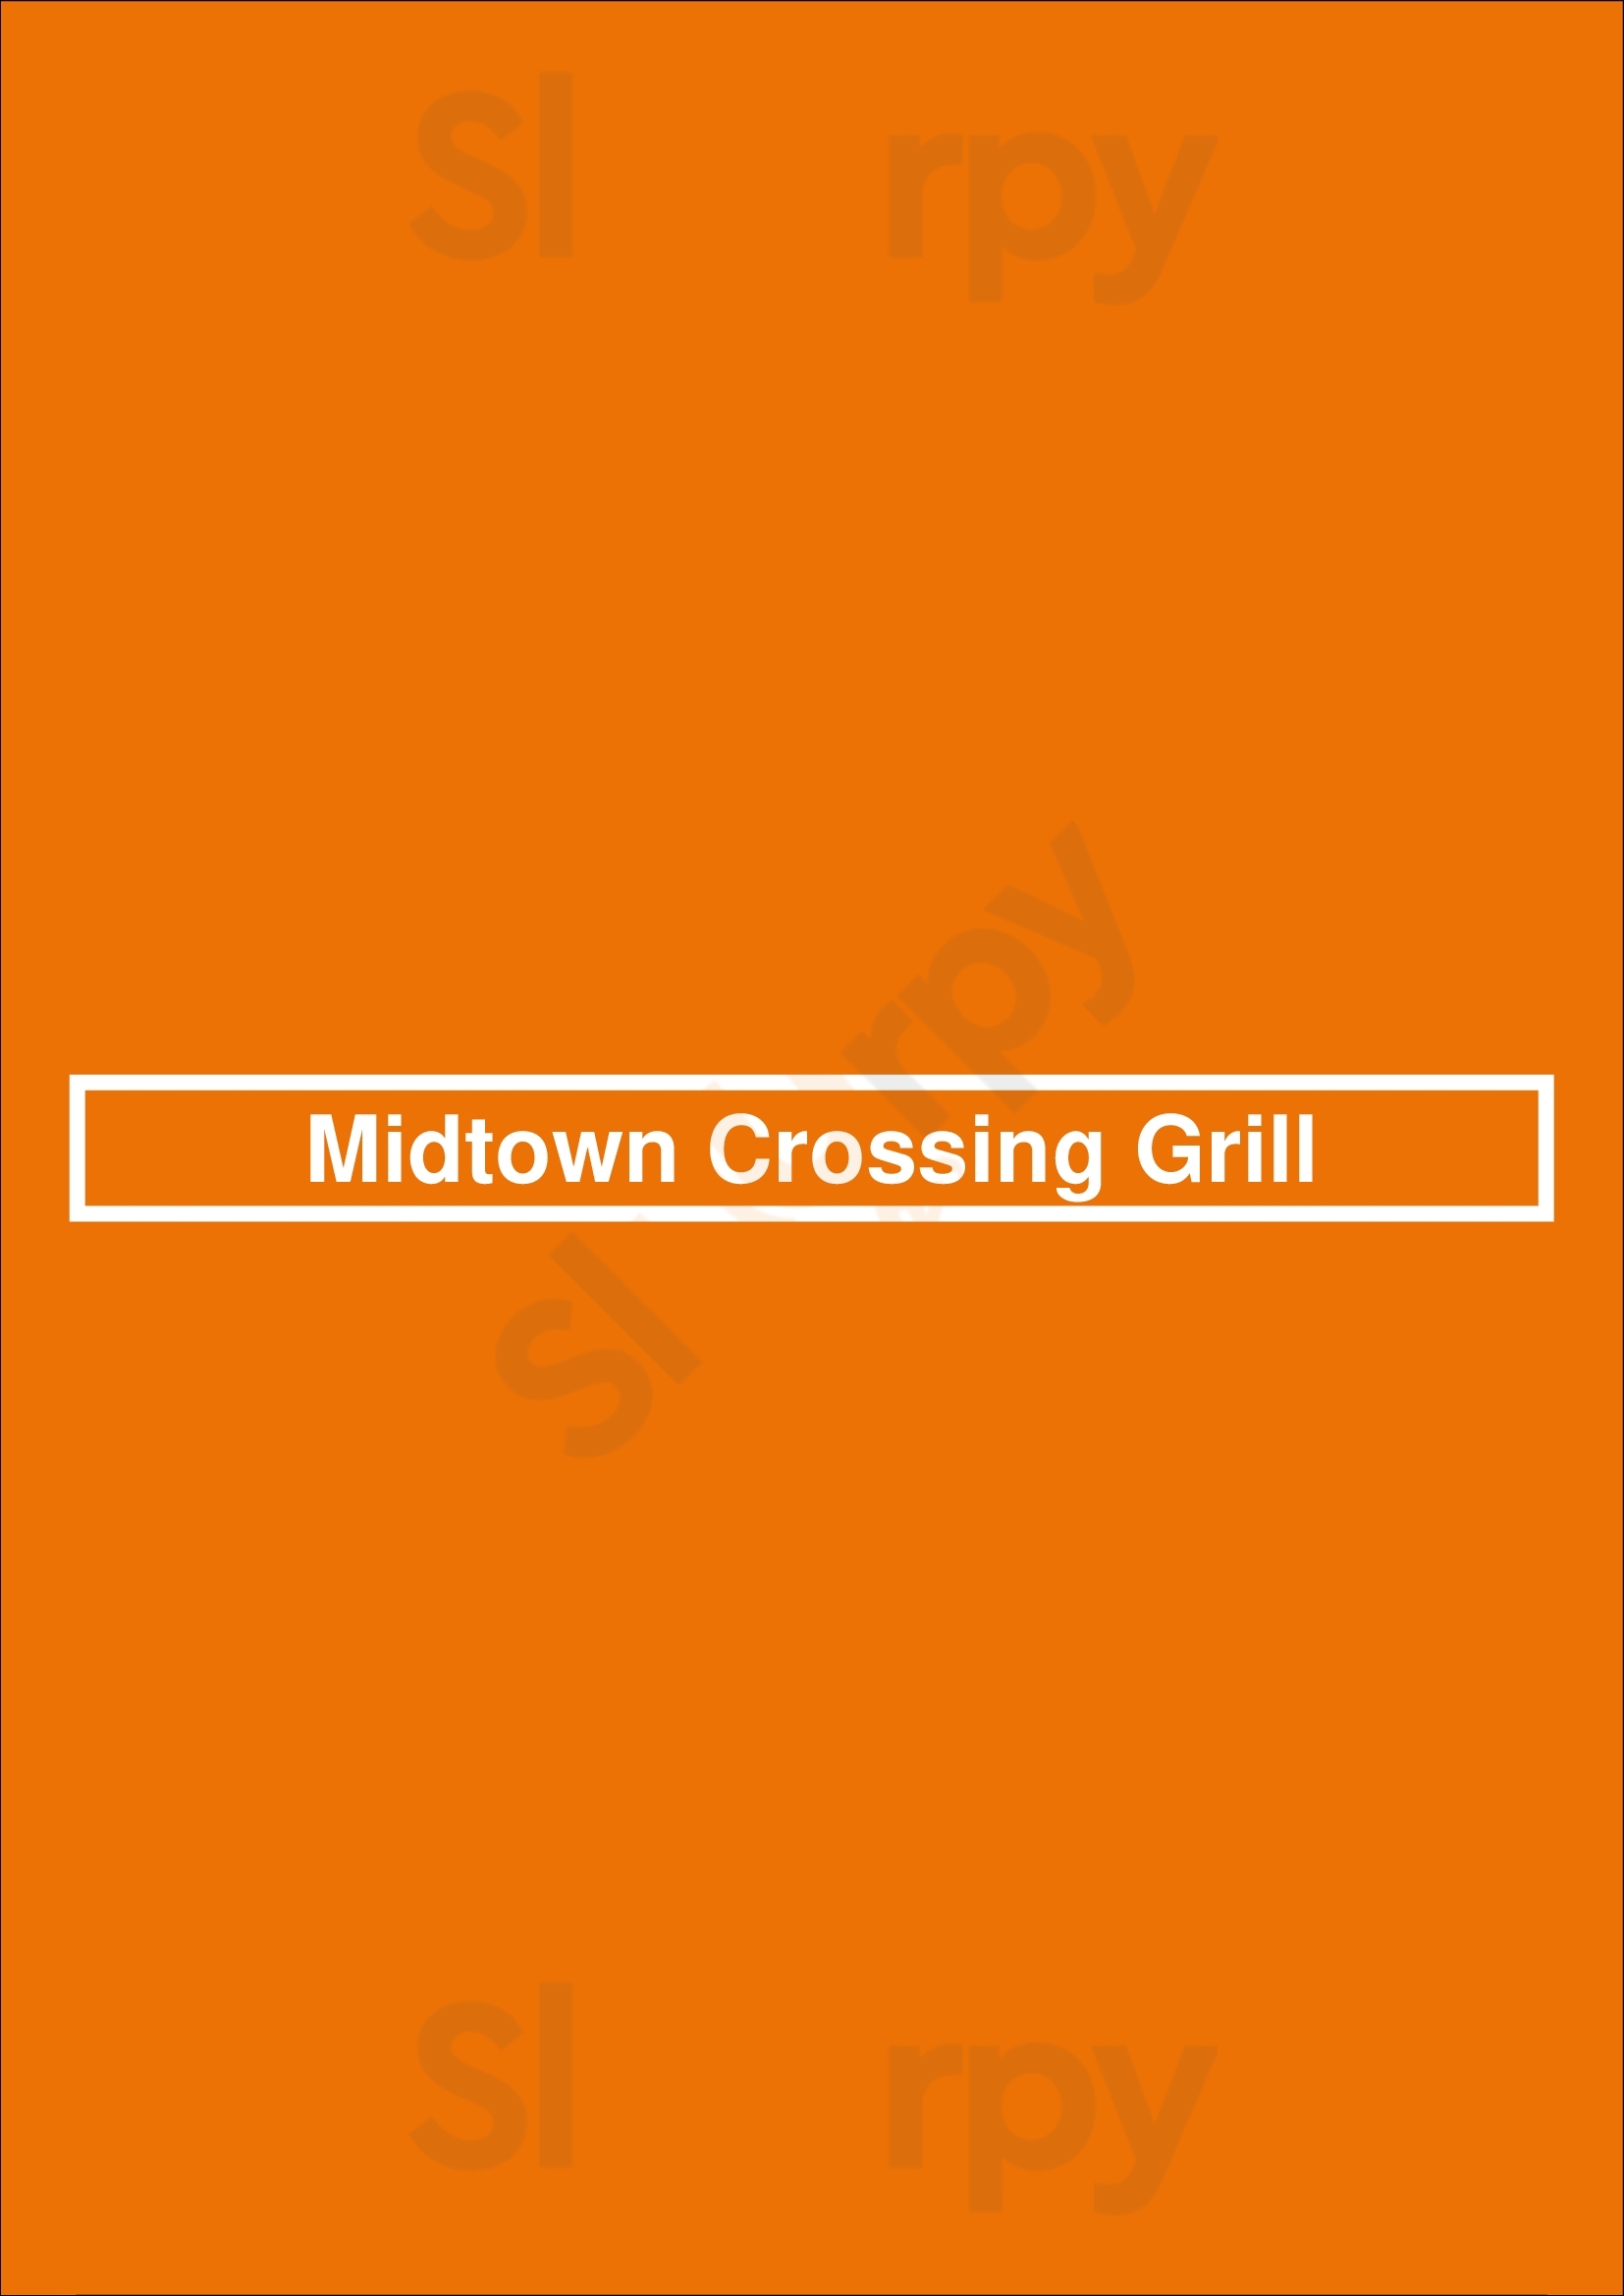 Midtown Crossing Grill Memphis Menu - 1